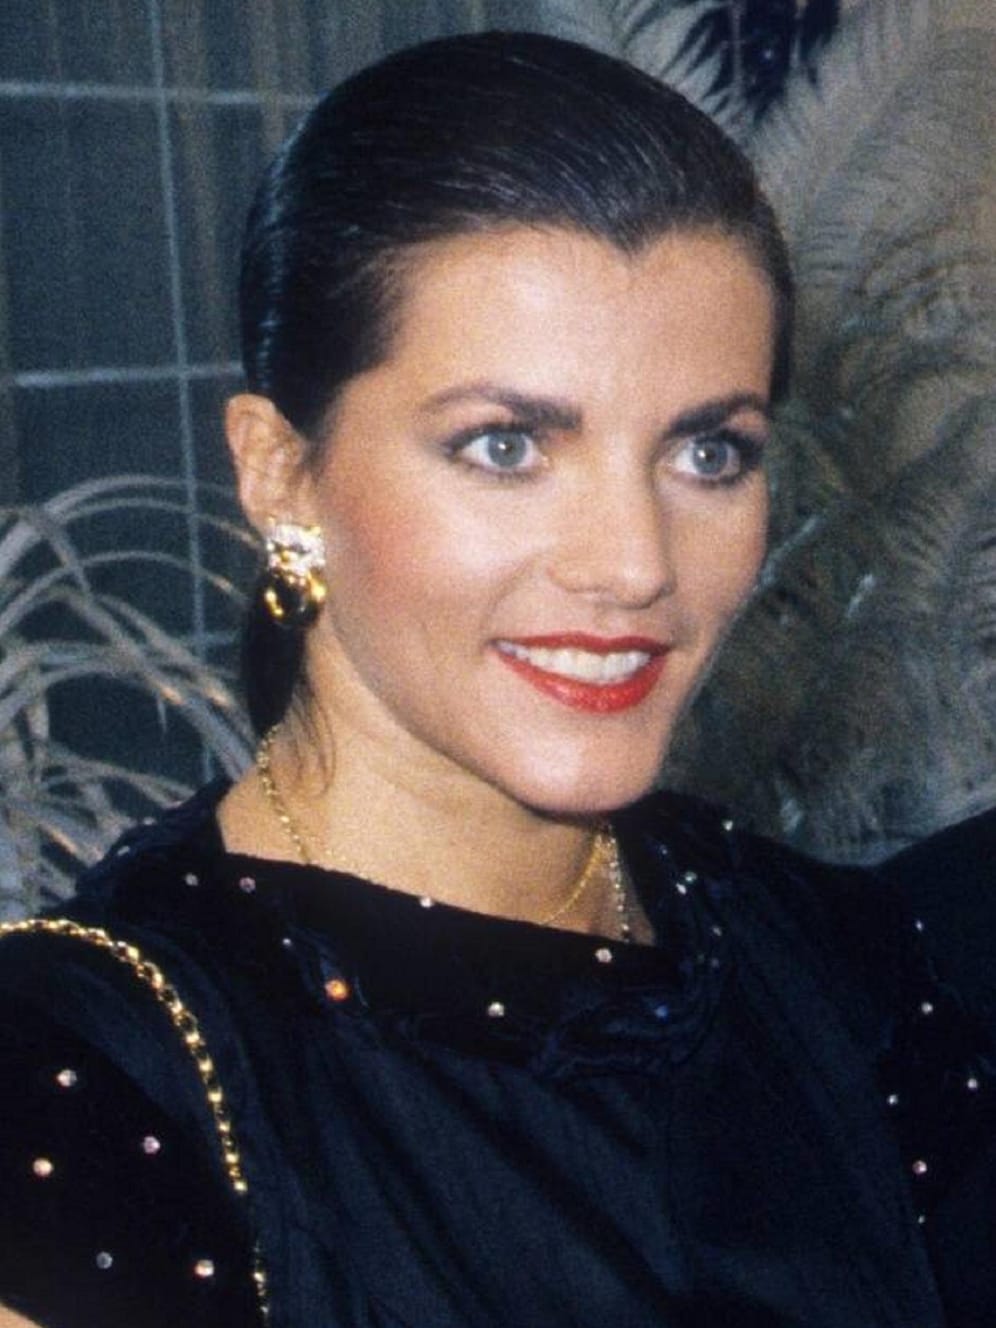 1988: Birgit Schrowange